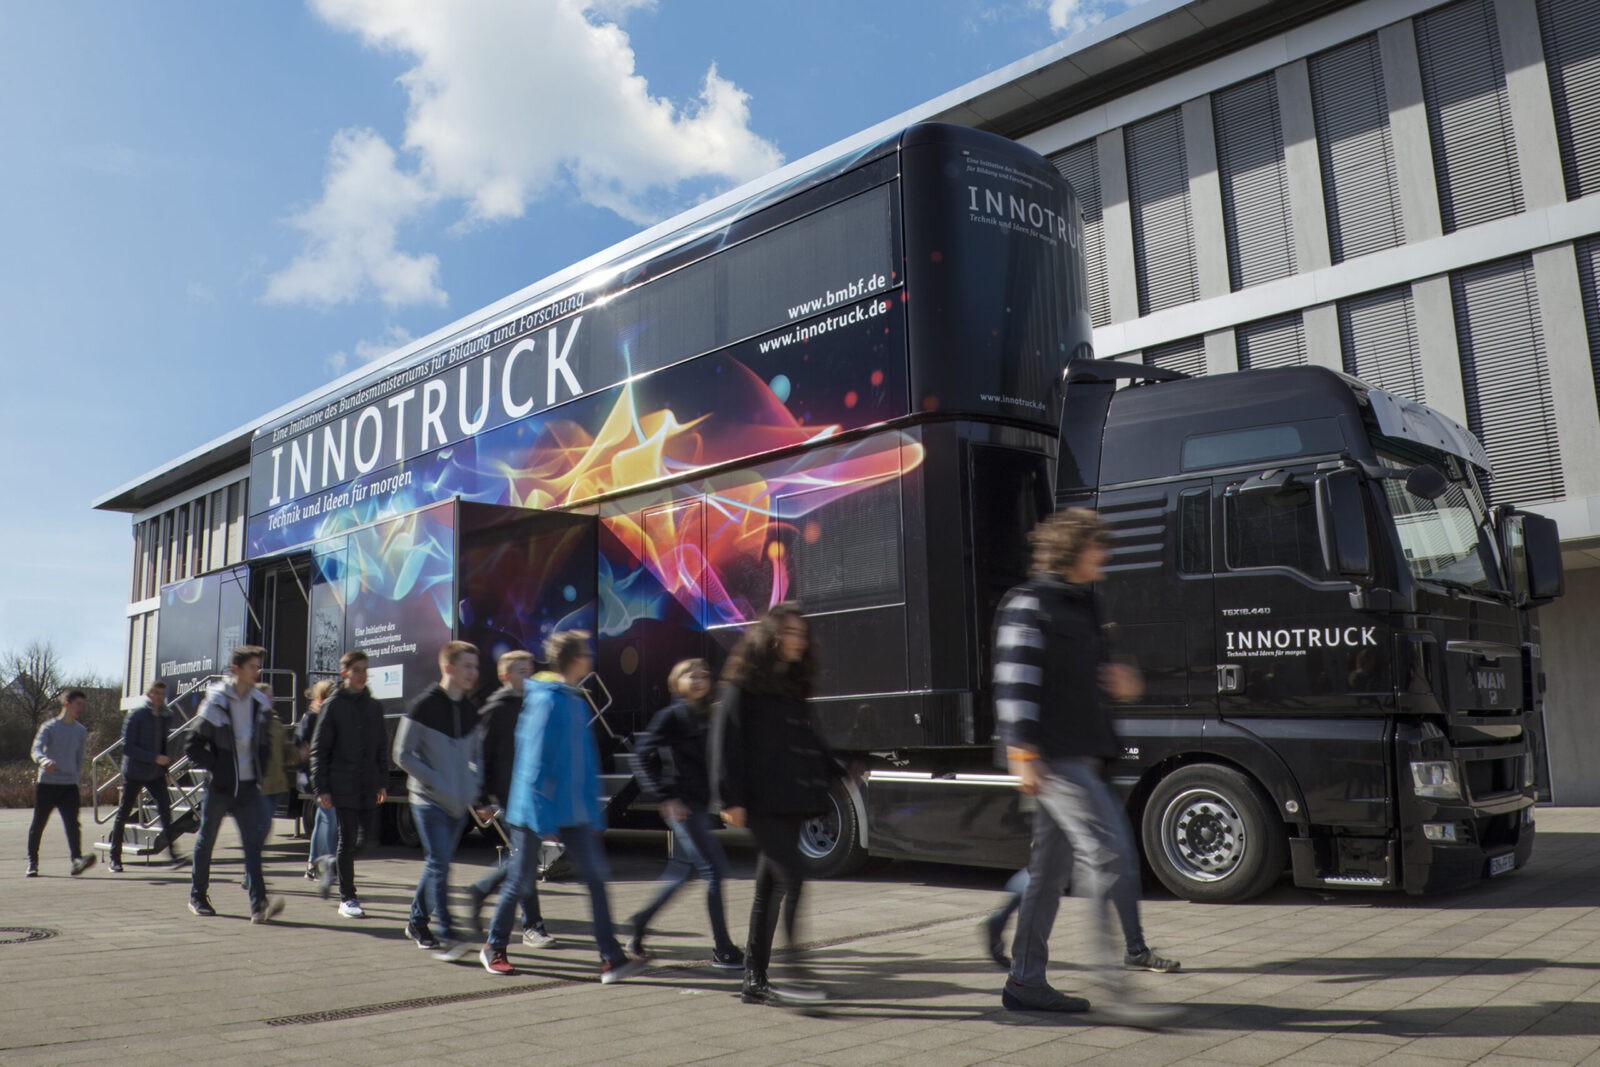 ZU-TECH-TRIER präsentiert mit dem InnoTruck futuristische Technologien in einer mobilen Ausstellung.